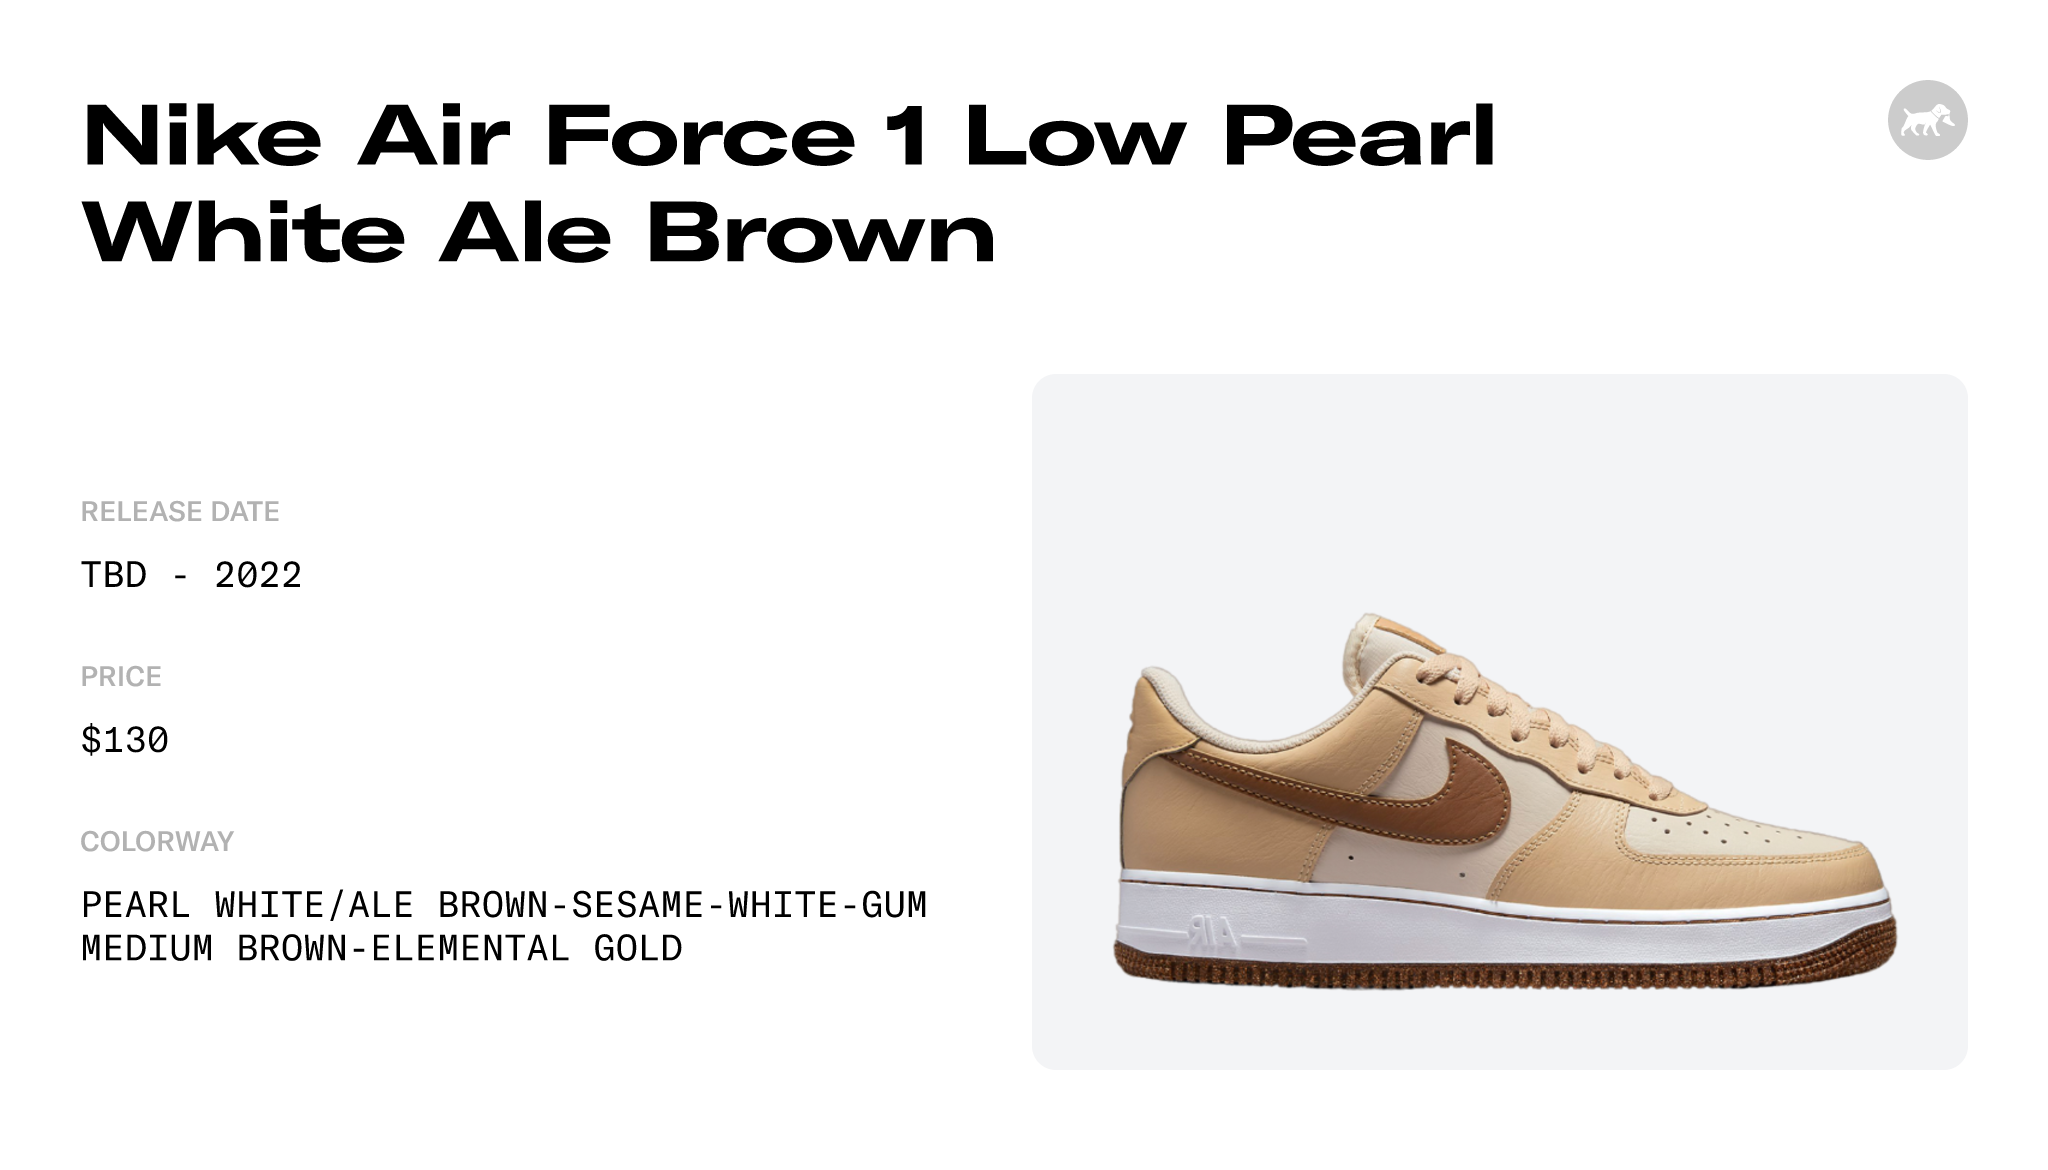 Nike Air Force 1 LV8 1 - Pearl White / Ale Brown / Sesame / White